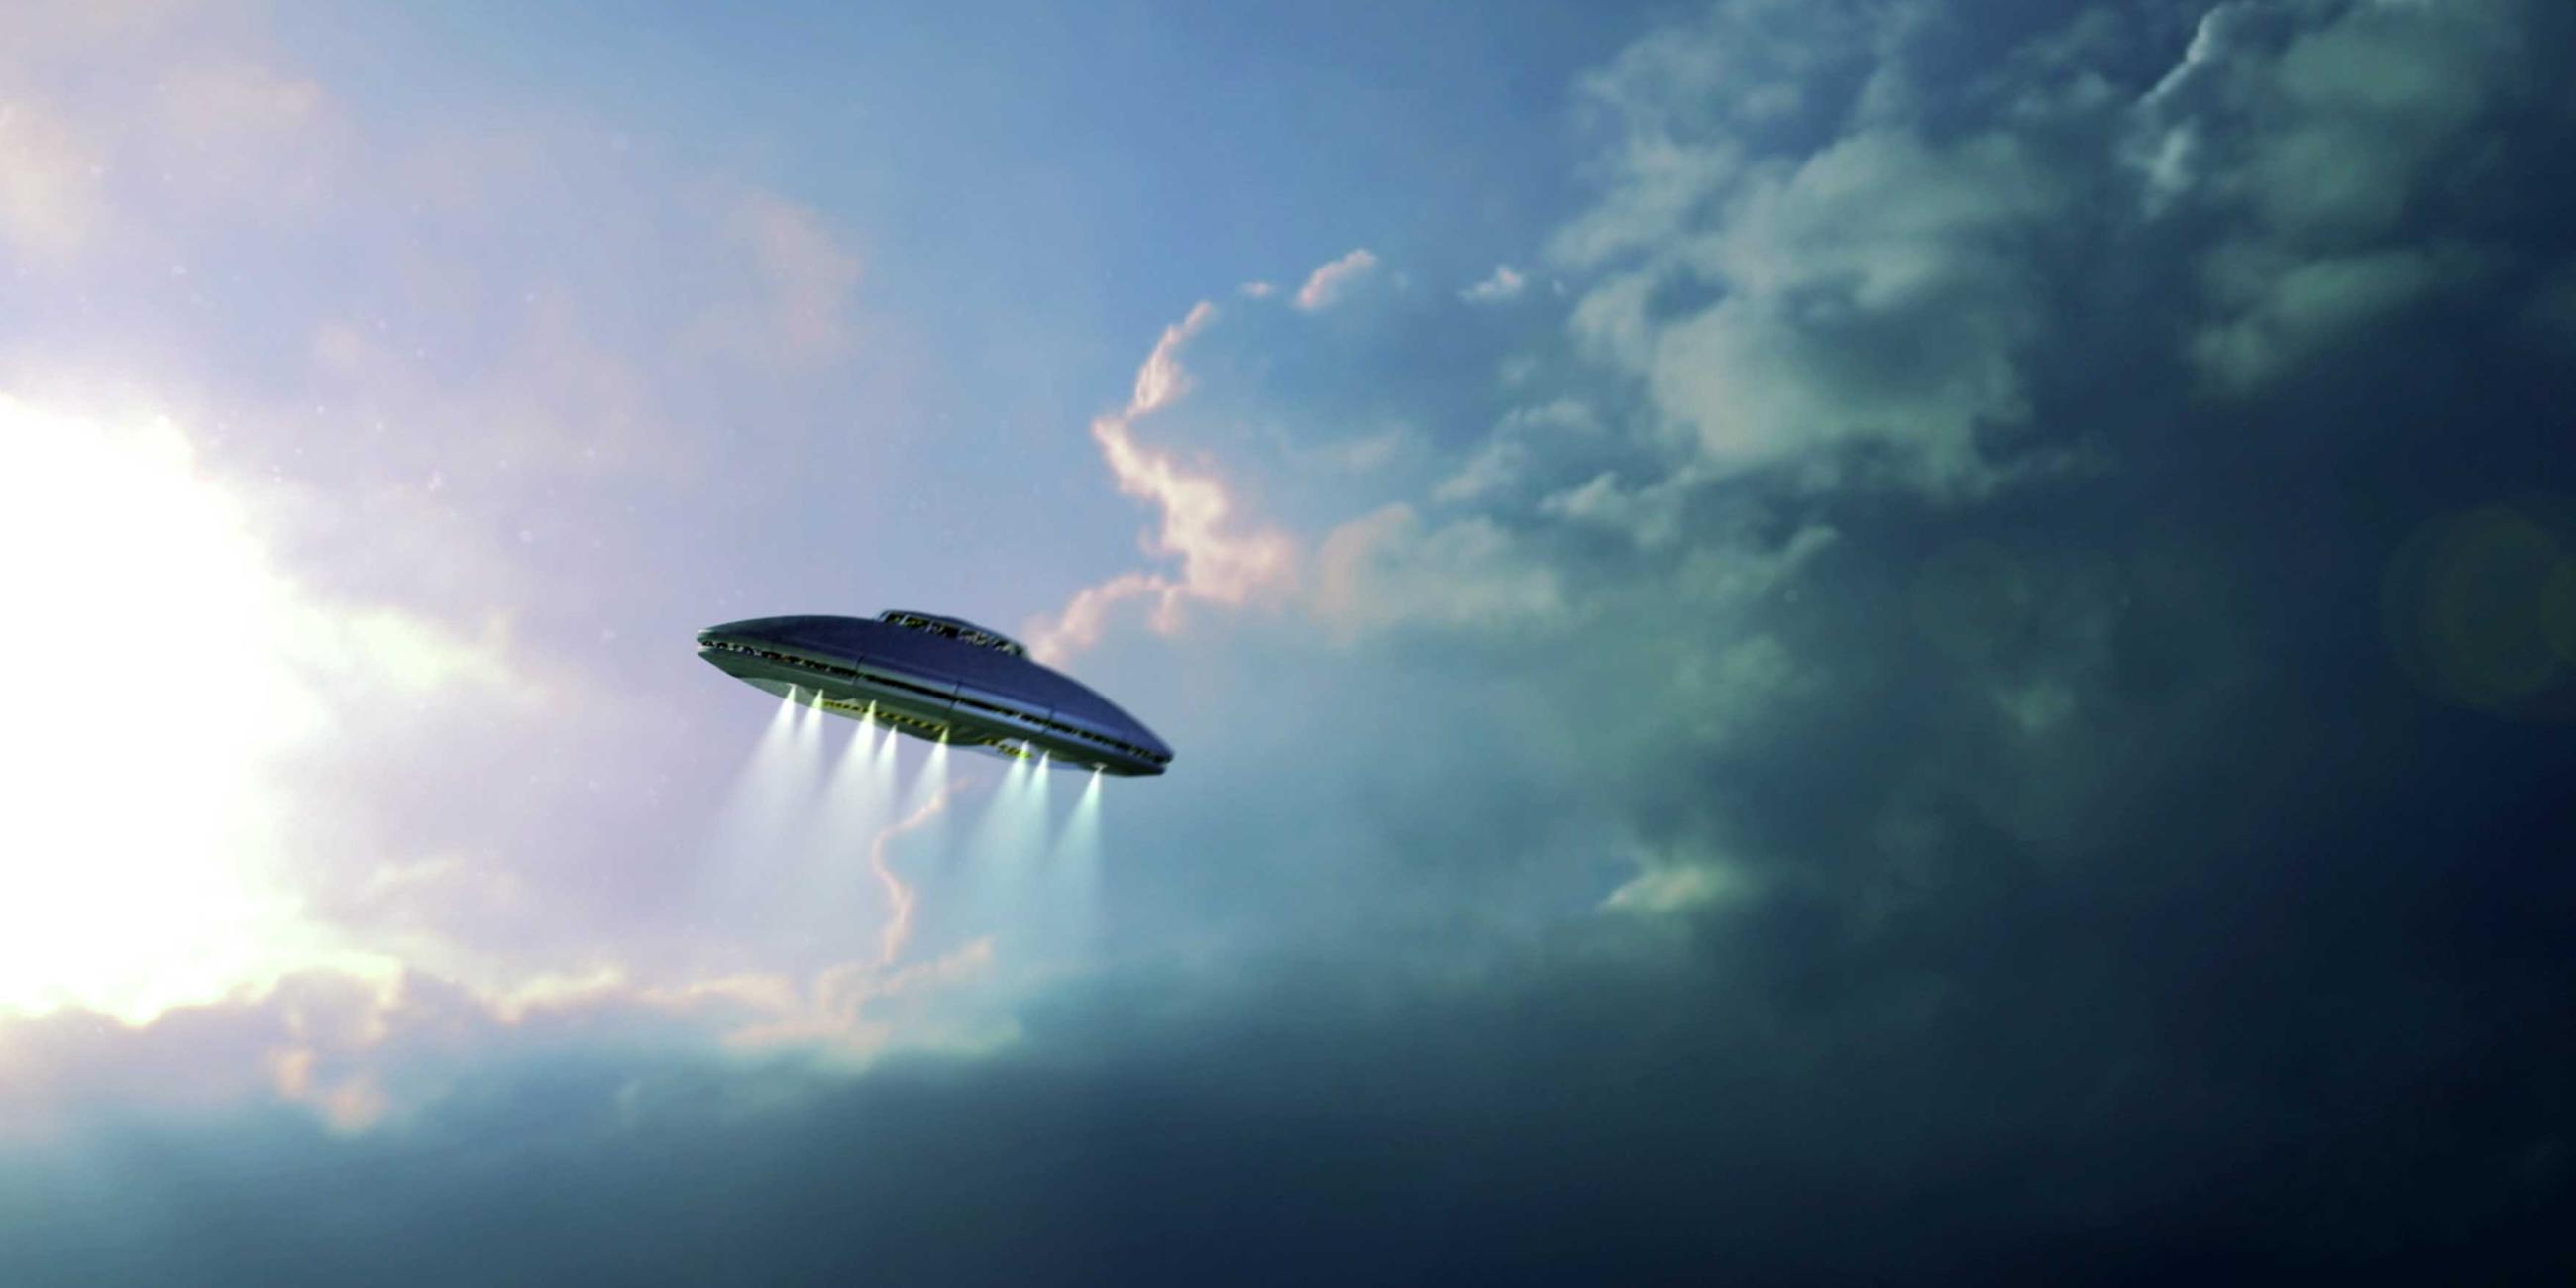  Ein Frisbee-förmiges UFO fliegt durch den Himmel. Lichtstrahlen kommen aus dem unteren Teil heraus.